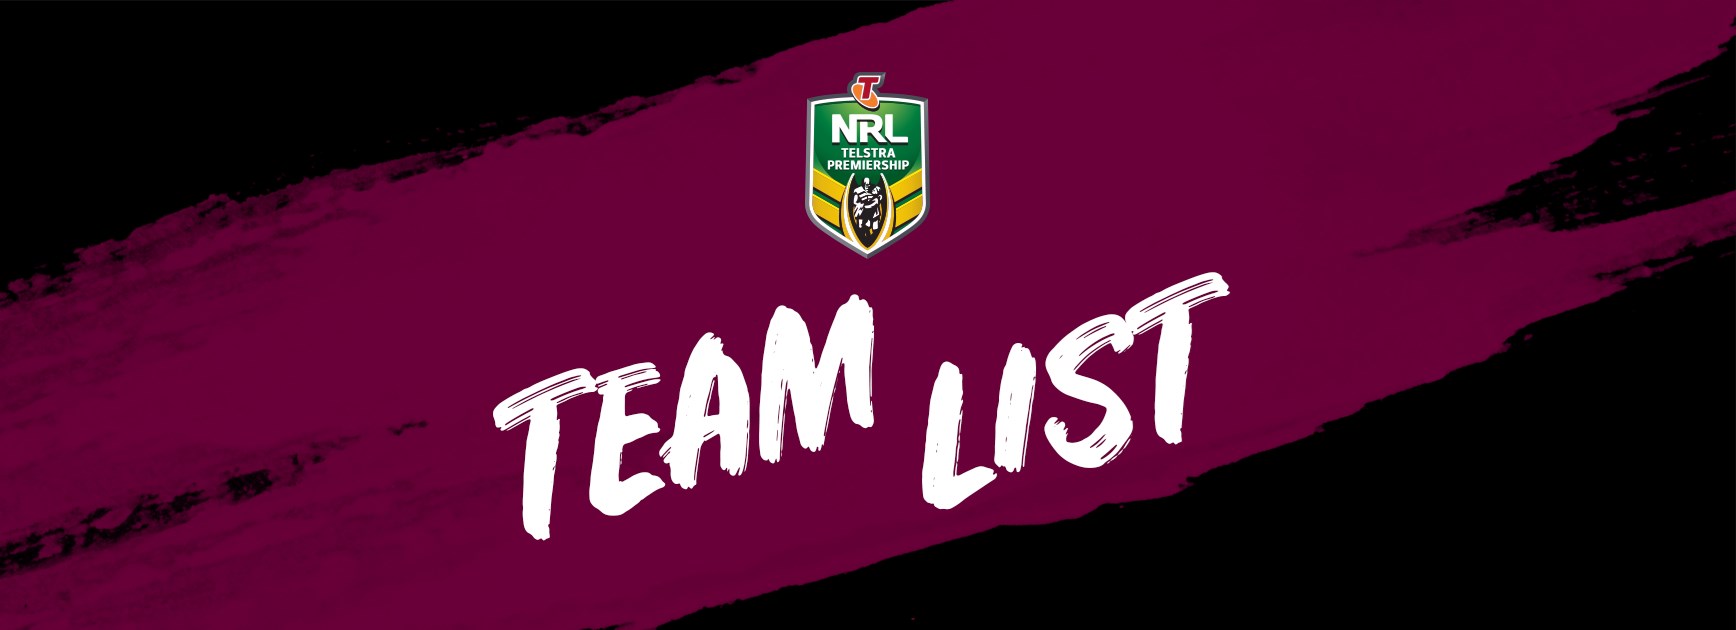 NRL Team List - Round 13